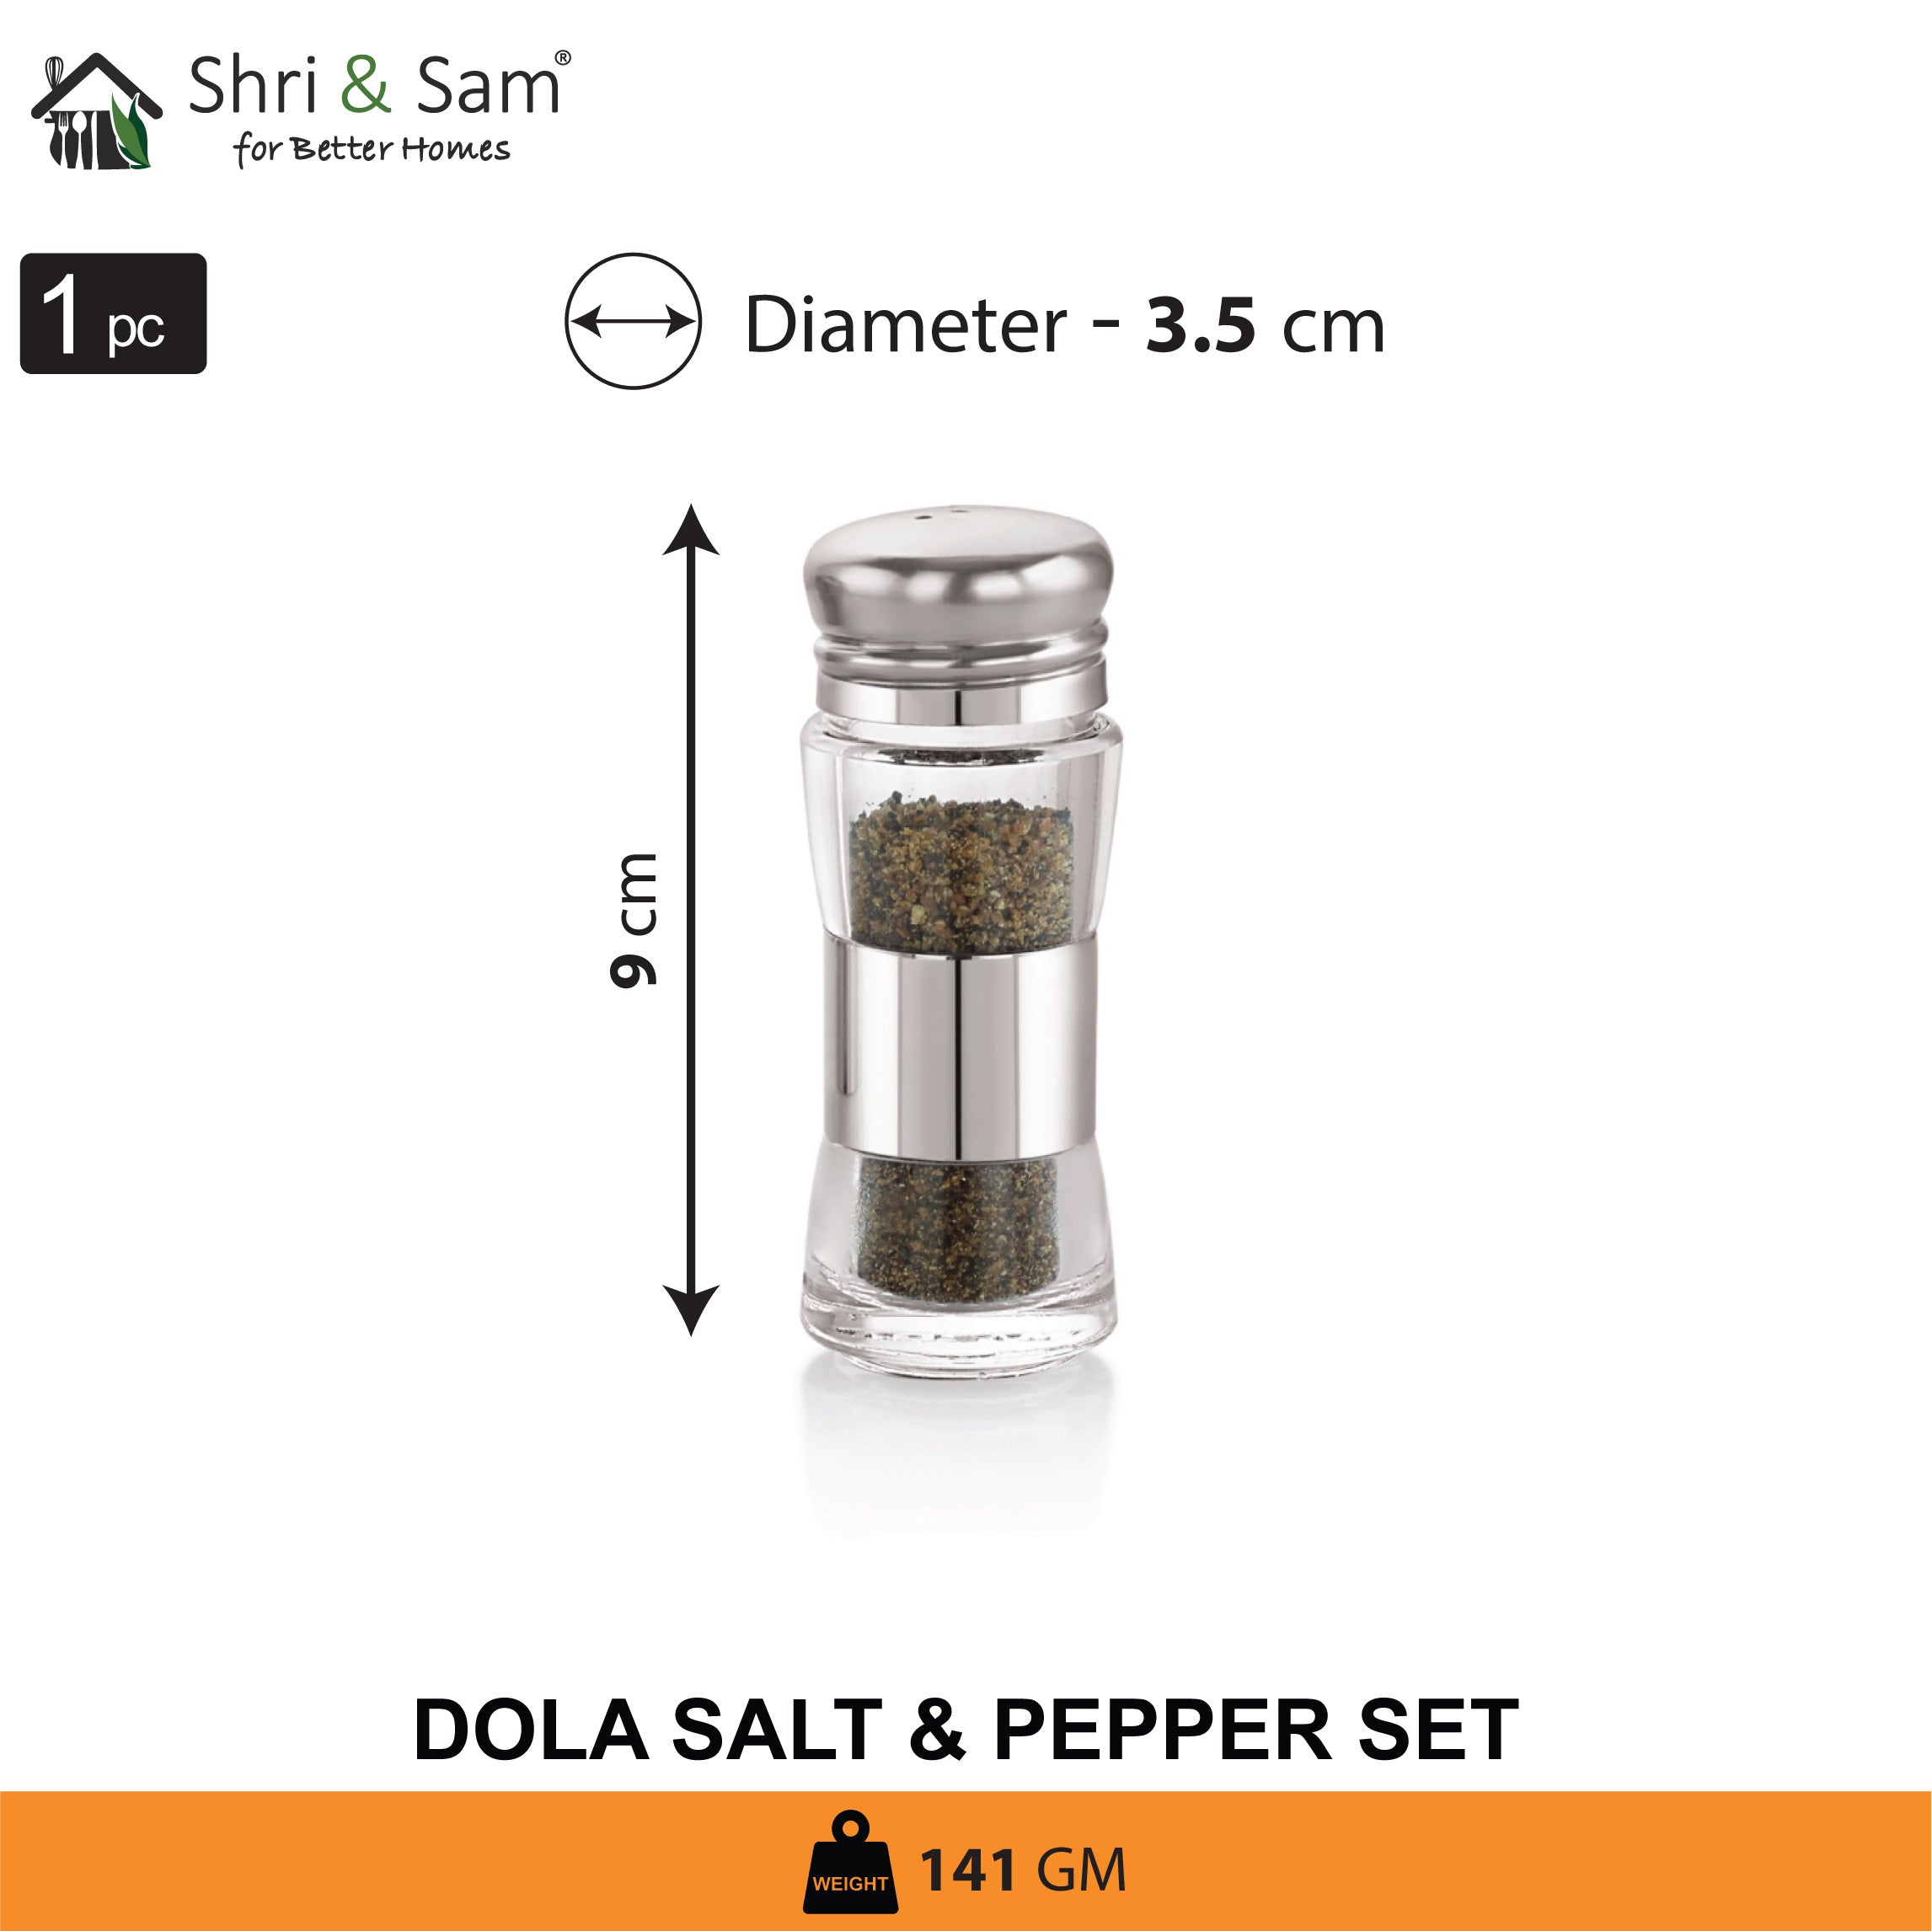 Stainless Steel Dola Salt & Pepper